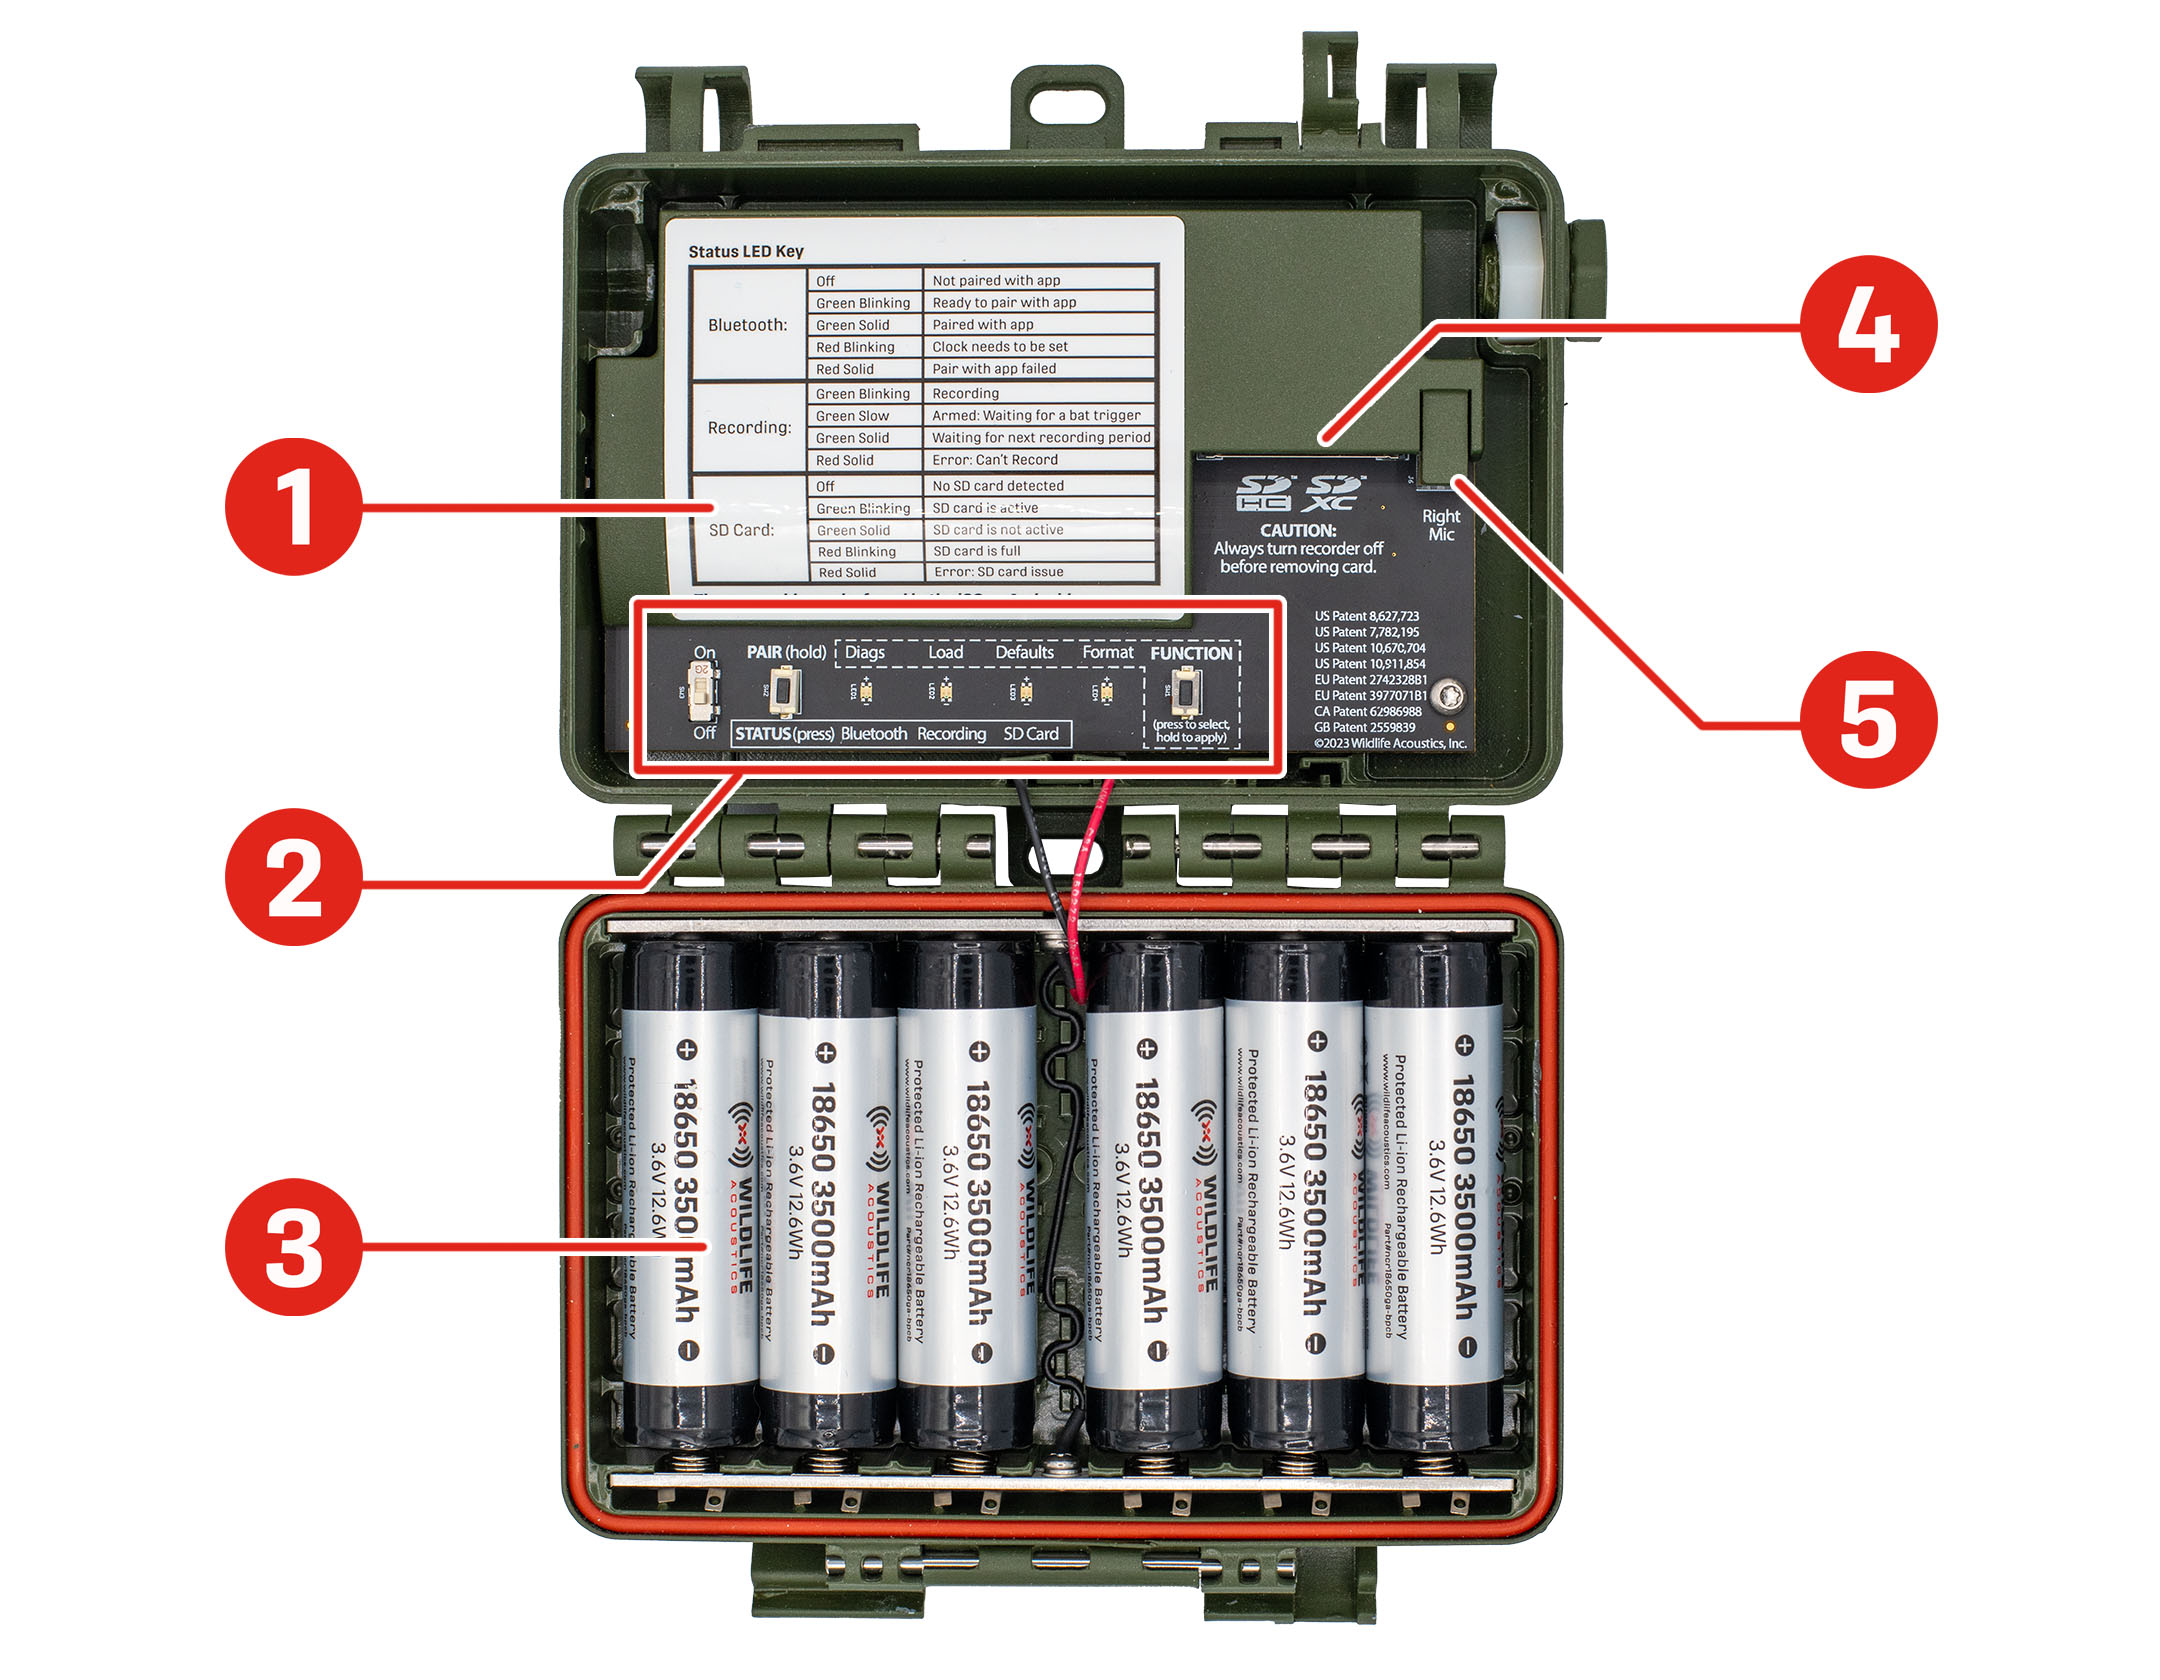 Se muestra un Song Meter Mini Bat 2 con la carcasa abierta y plana, con los componentes internos orientados hacia el lector. Se indican las ubicaciones de los principales elementos: la clave de LED Status (Estado) es una pegatina impresa que cubre una gran parte del lado izquierdo del compartimento superior. El panel de control, una fila horizontal con un interruptor, botones y varios LED, se sitúa a lo largo del borde inferior del compartimento superior. El compartimento de la batería ocupa la totalidad del compartimento inferior, que se muestra aquí con seis baterías de iones de litio instaladas. La ranura para tarjetas SD se encuentra en la parte superior derecha del compartimento superior, protegida por una tapa de plástico con la abertura orientada hacia abajo. El conector del micrófono derecho está justo a la derecha de la ranura para tarjetas SD y su abertura está orientada hacia abajo.